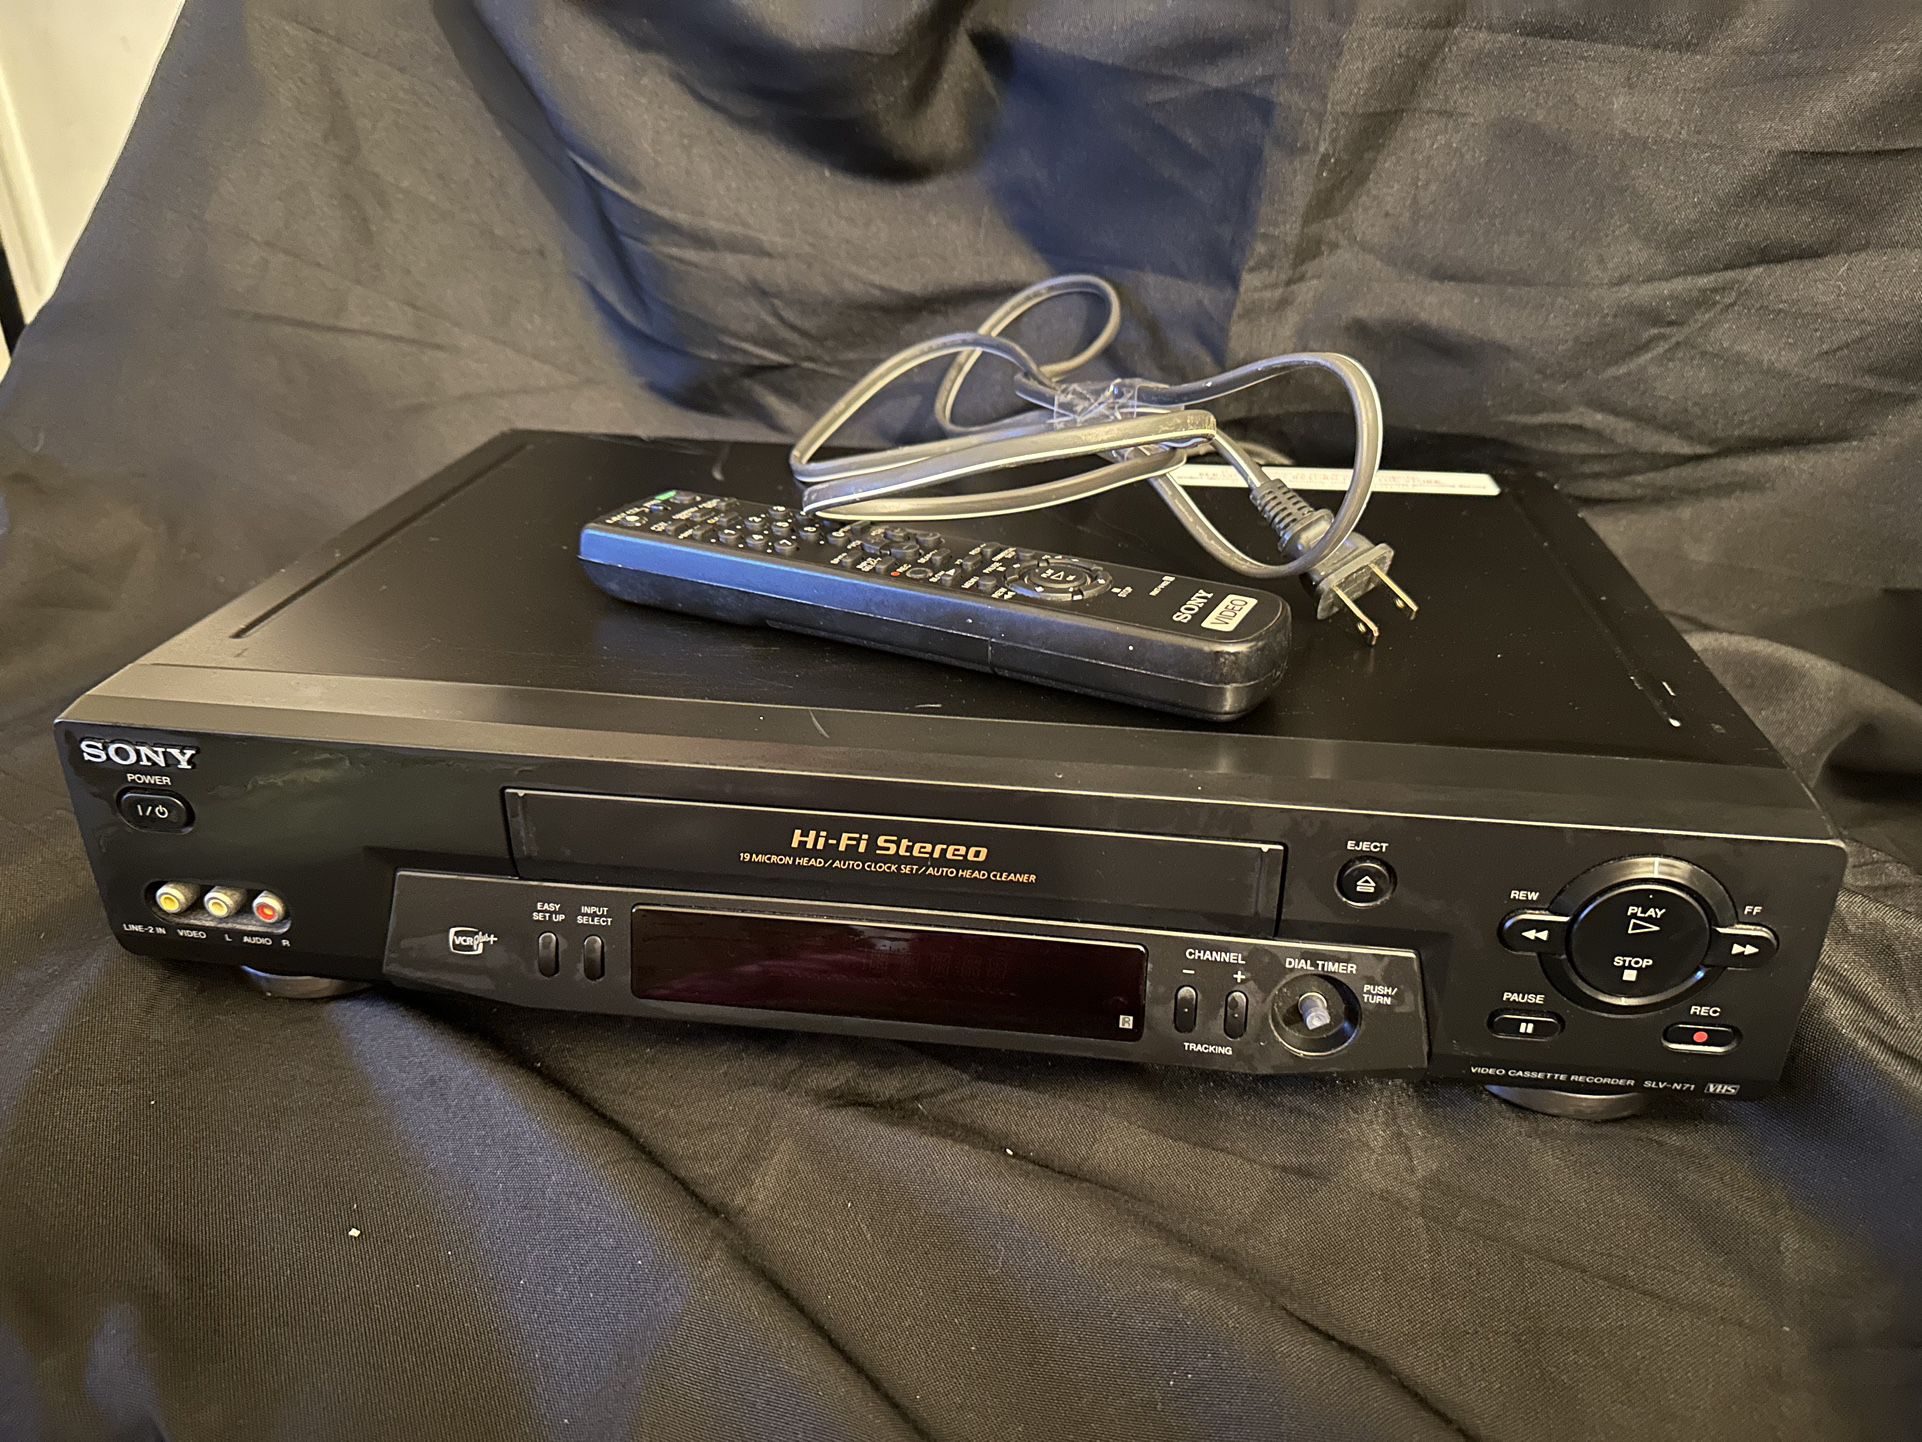 Sony SLV-N71 VCR